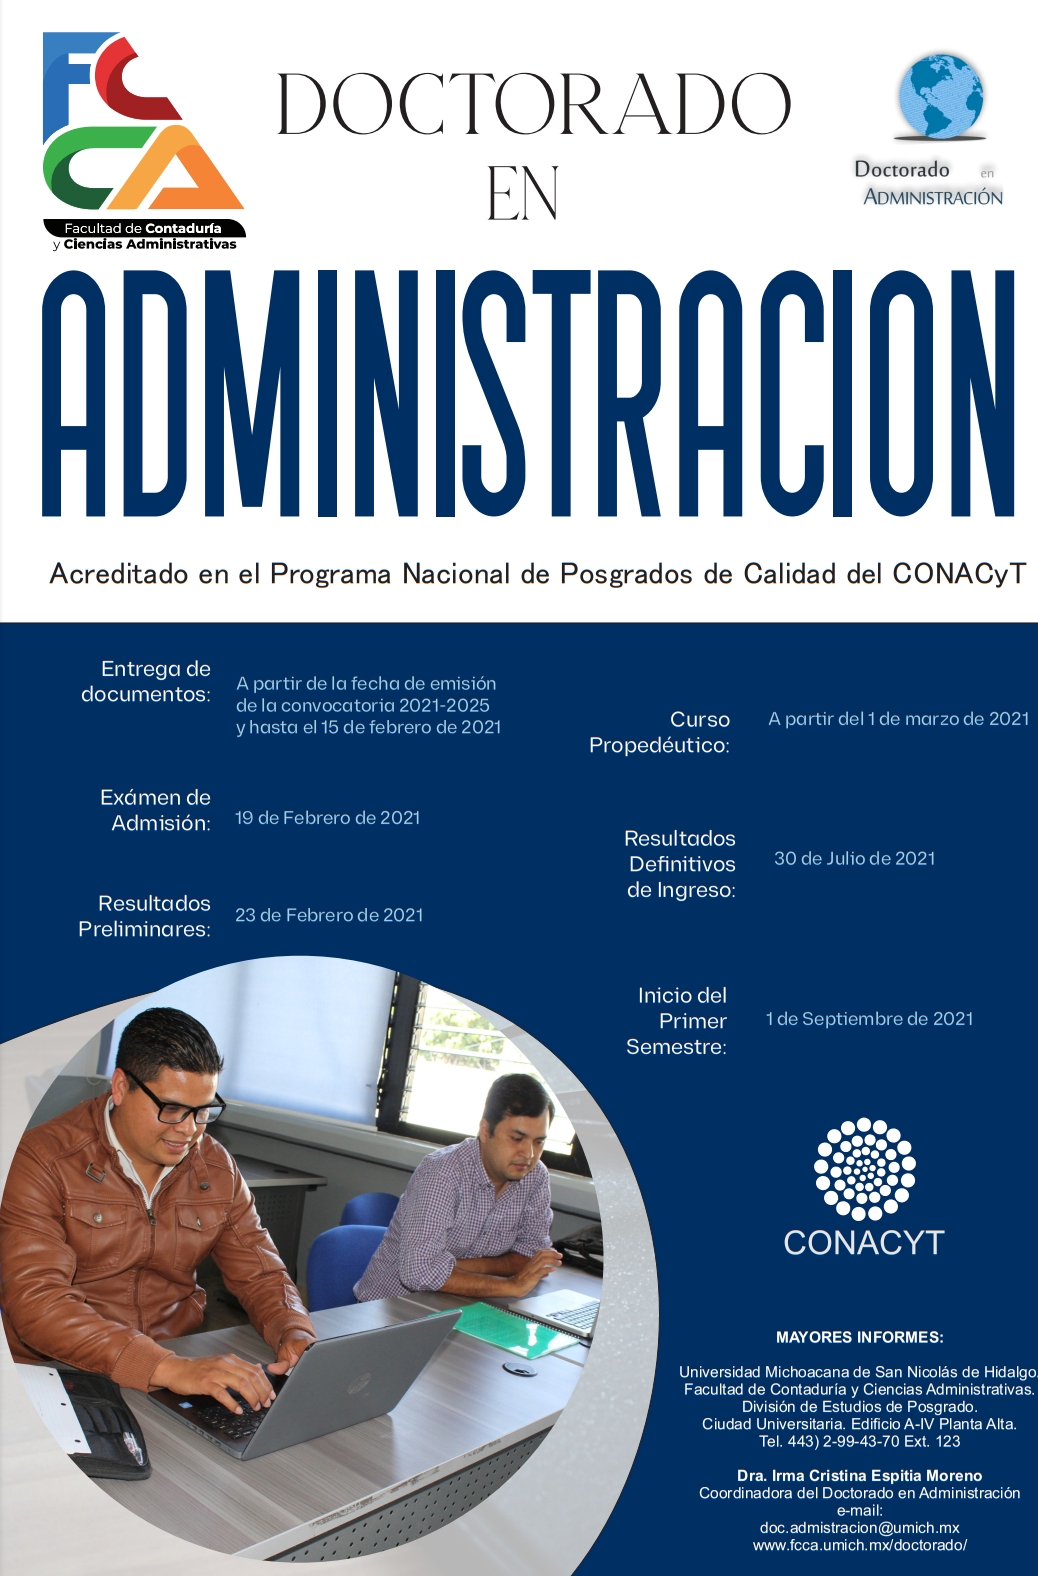 Convocatoria al Doctorado en Administración de la Facultad de Contaduría y Ciencias Administrativas de la Universidad Michoacana de San Nicolás de Hidalgo, generación 2021-2025